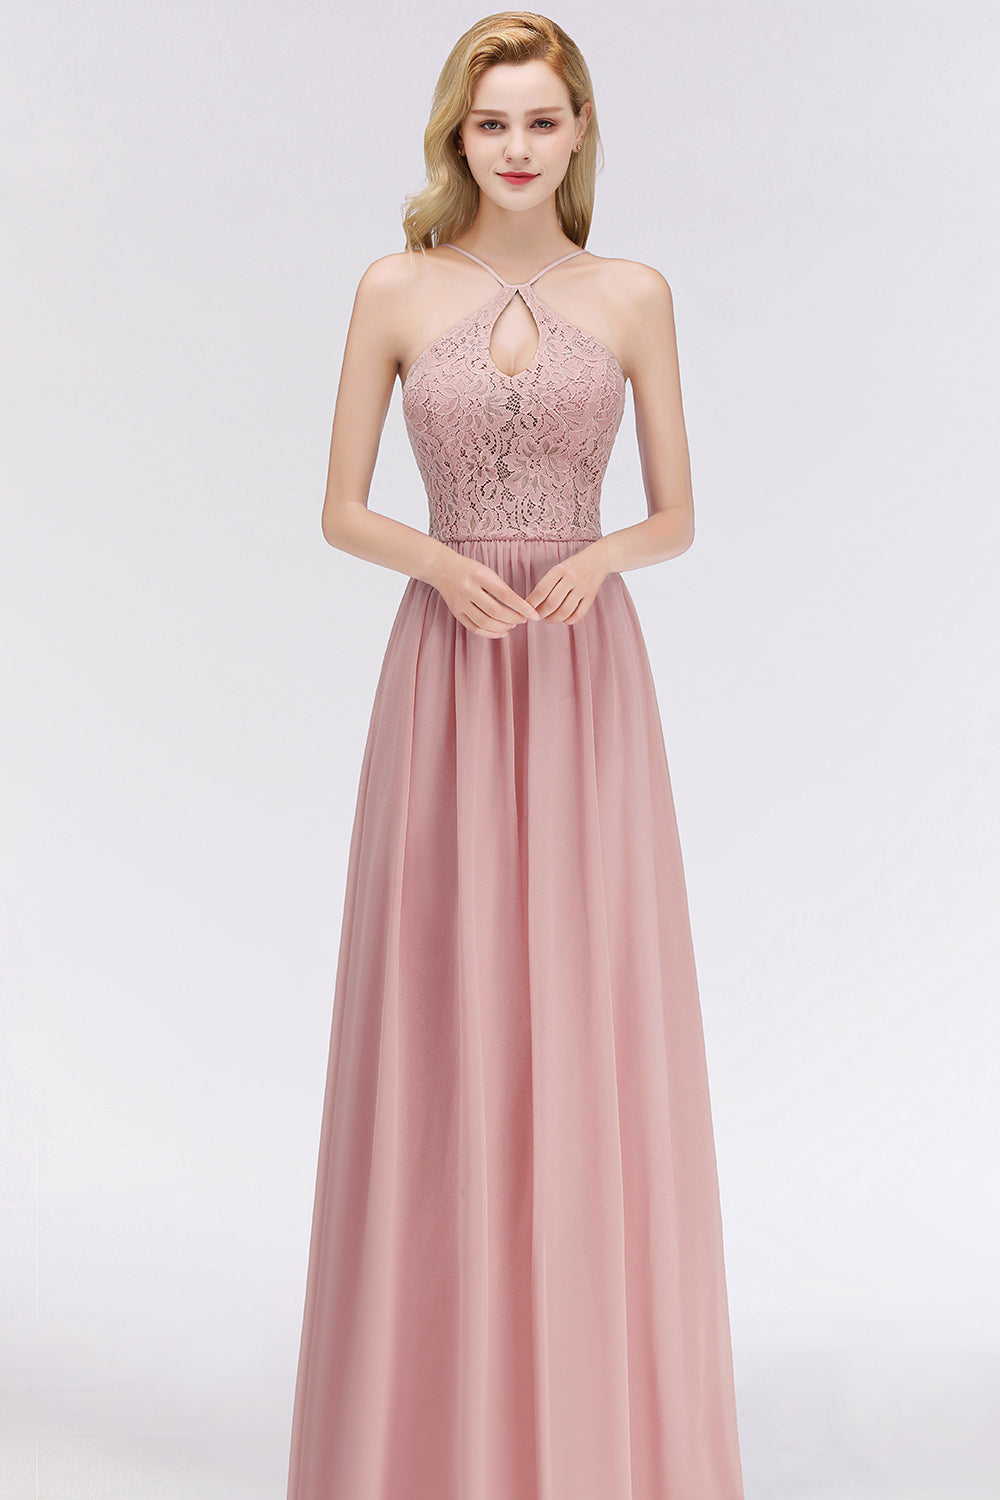 BMbridal Elegant Spitze Keyhole Neckholder Dusty Rose Chiffon Bridesmaid Dress Affordable